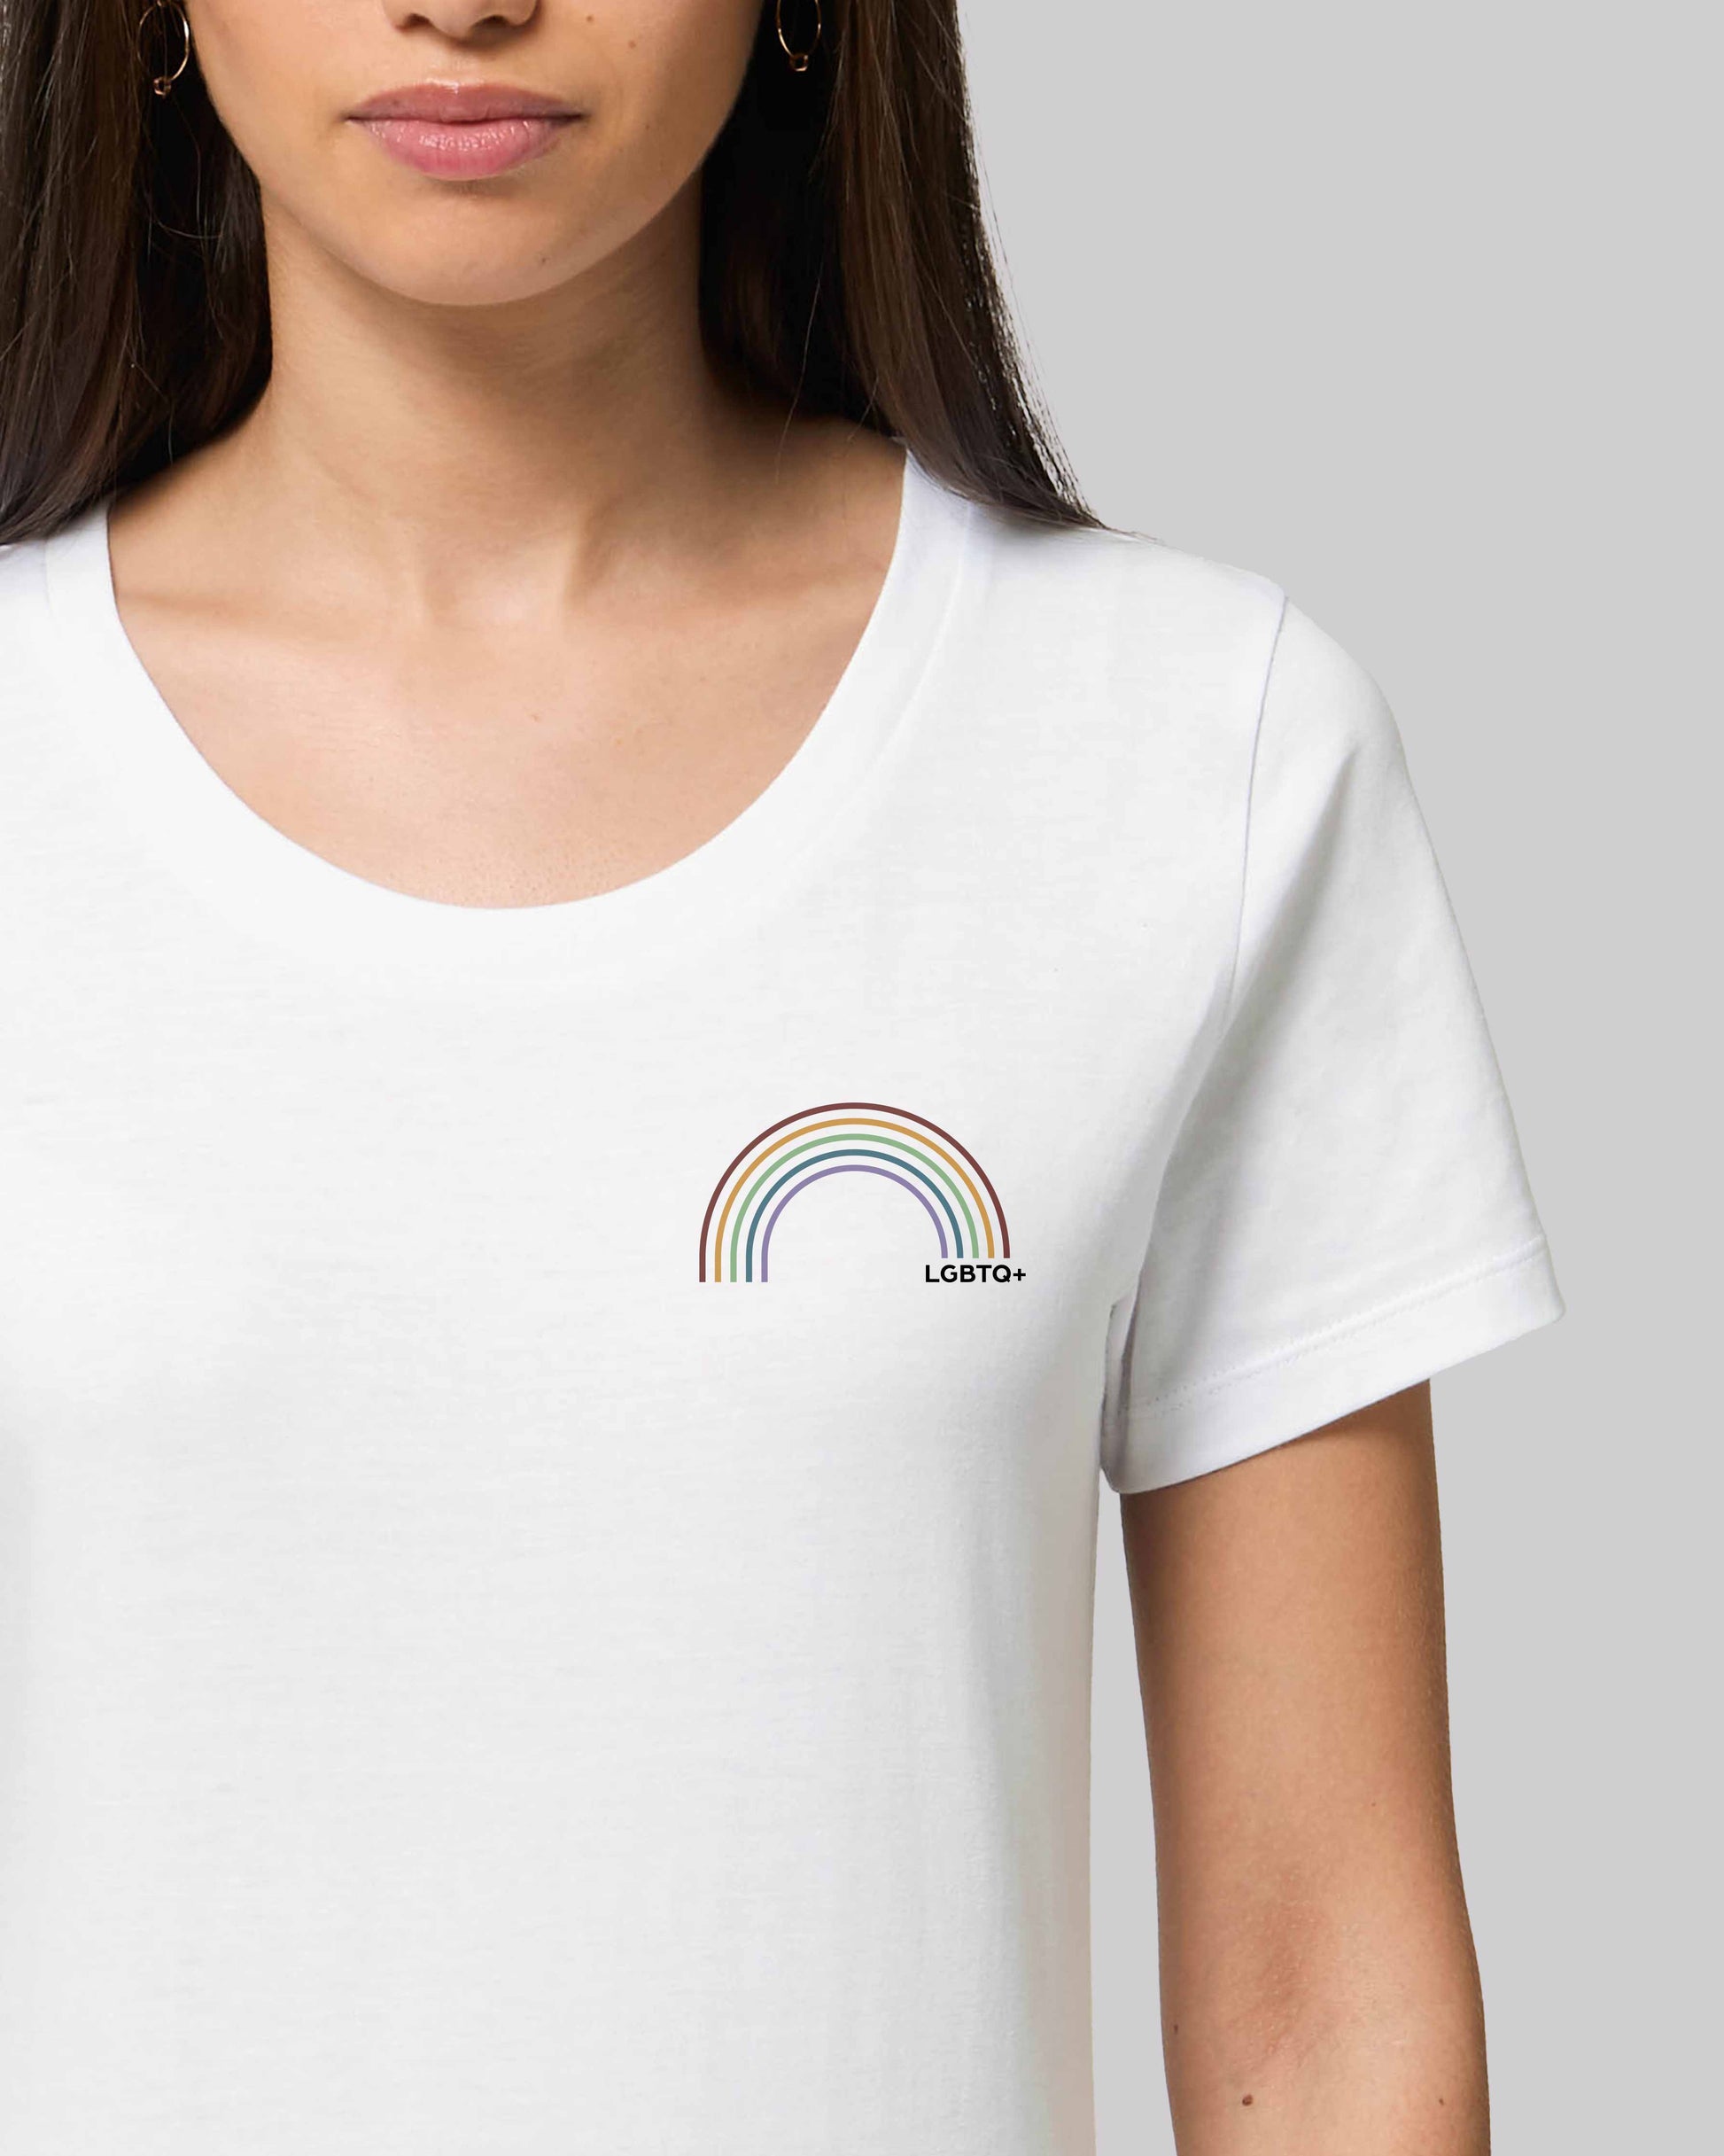 EINHORST® Organic Shirt tailliert in "Weiß" mit dem Motiv "lgbtq+ Regenbogen" in der Kombination bunter Regenbogen mit schwarzer Schrift, Bild von weiblicher Person mit Shirt